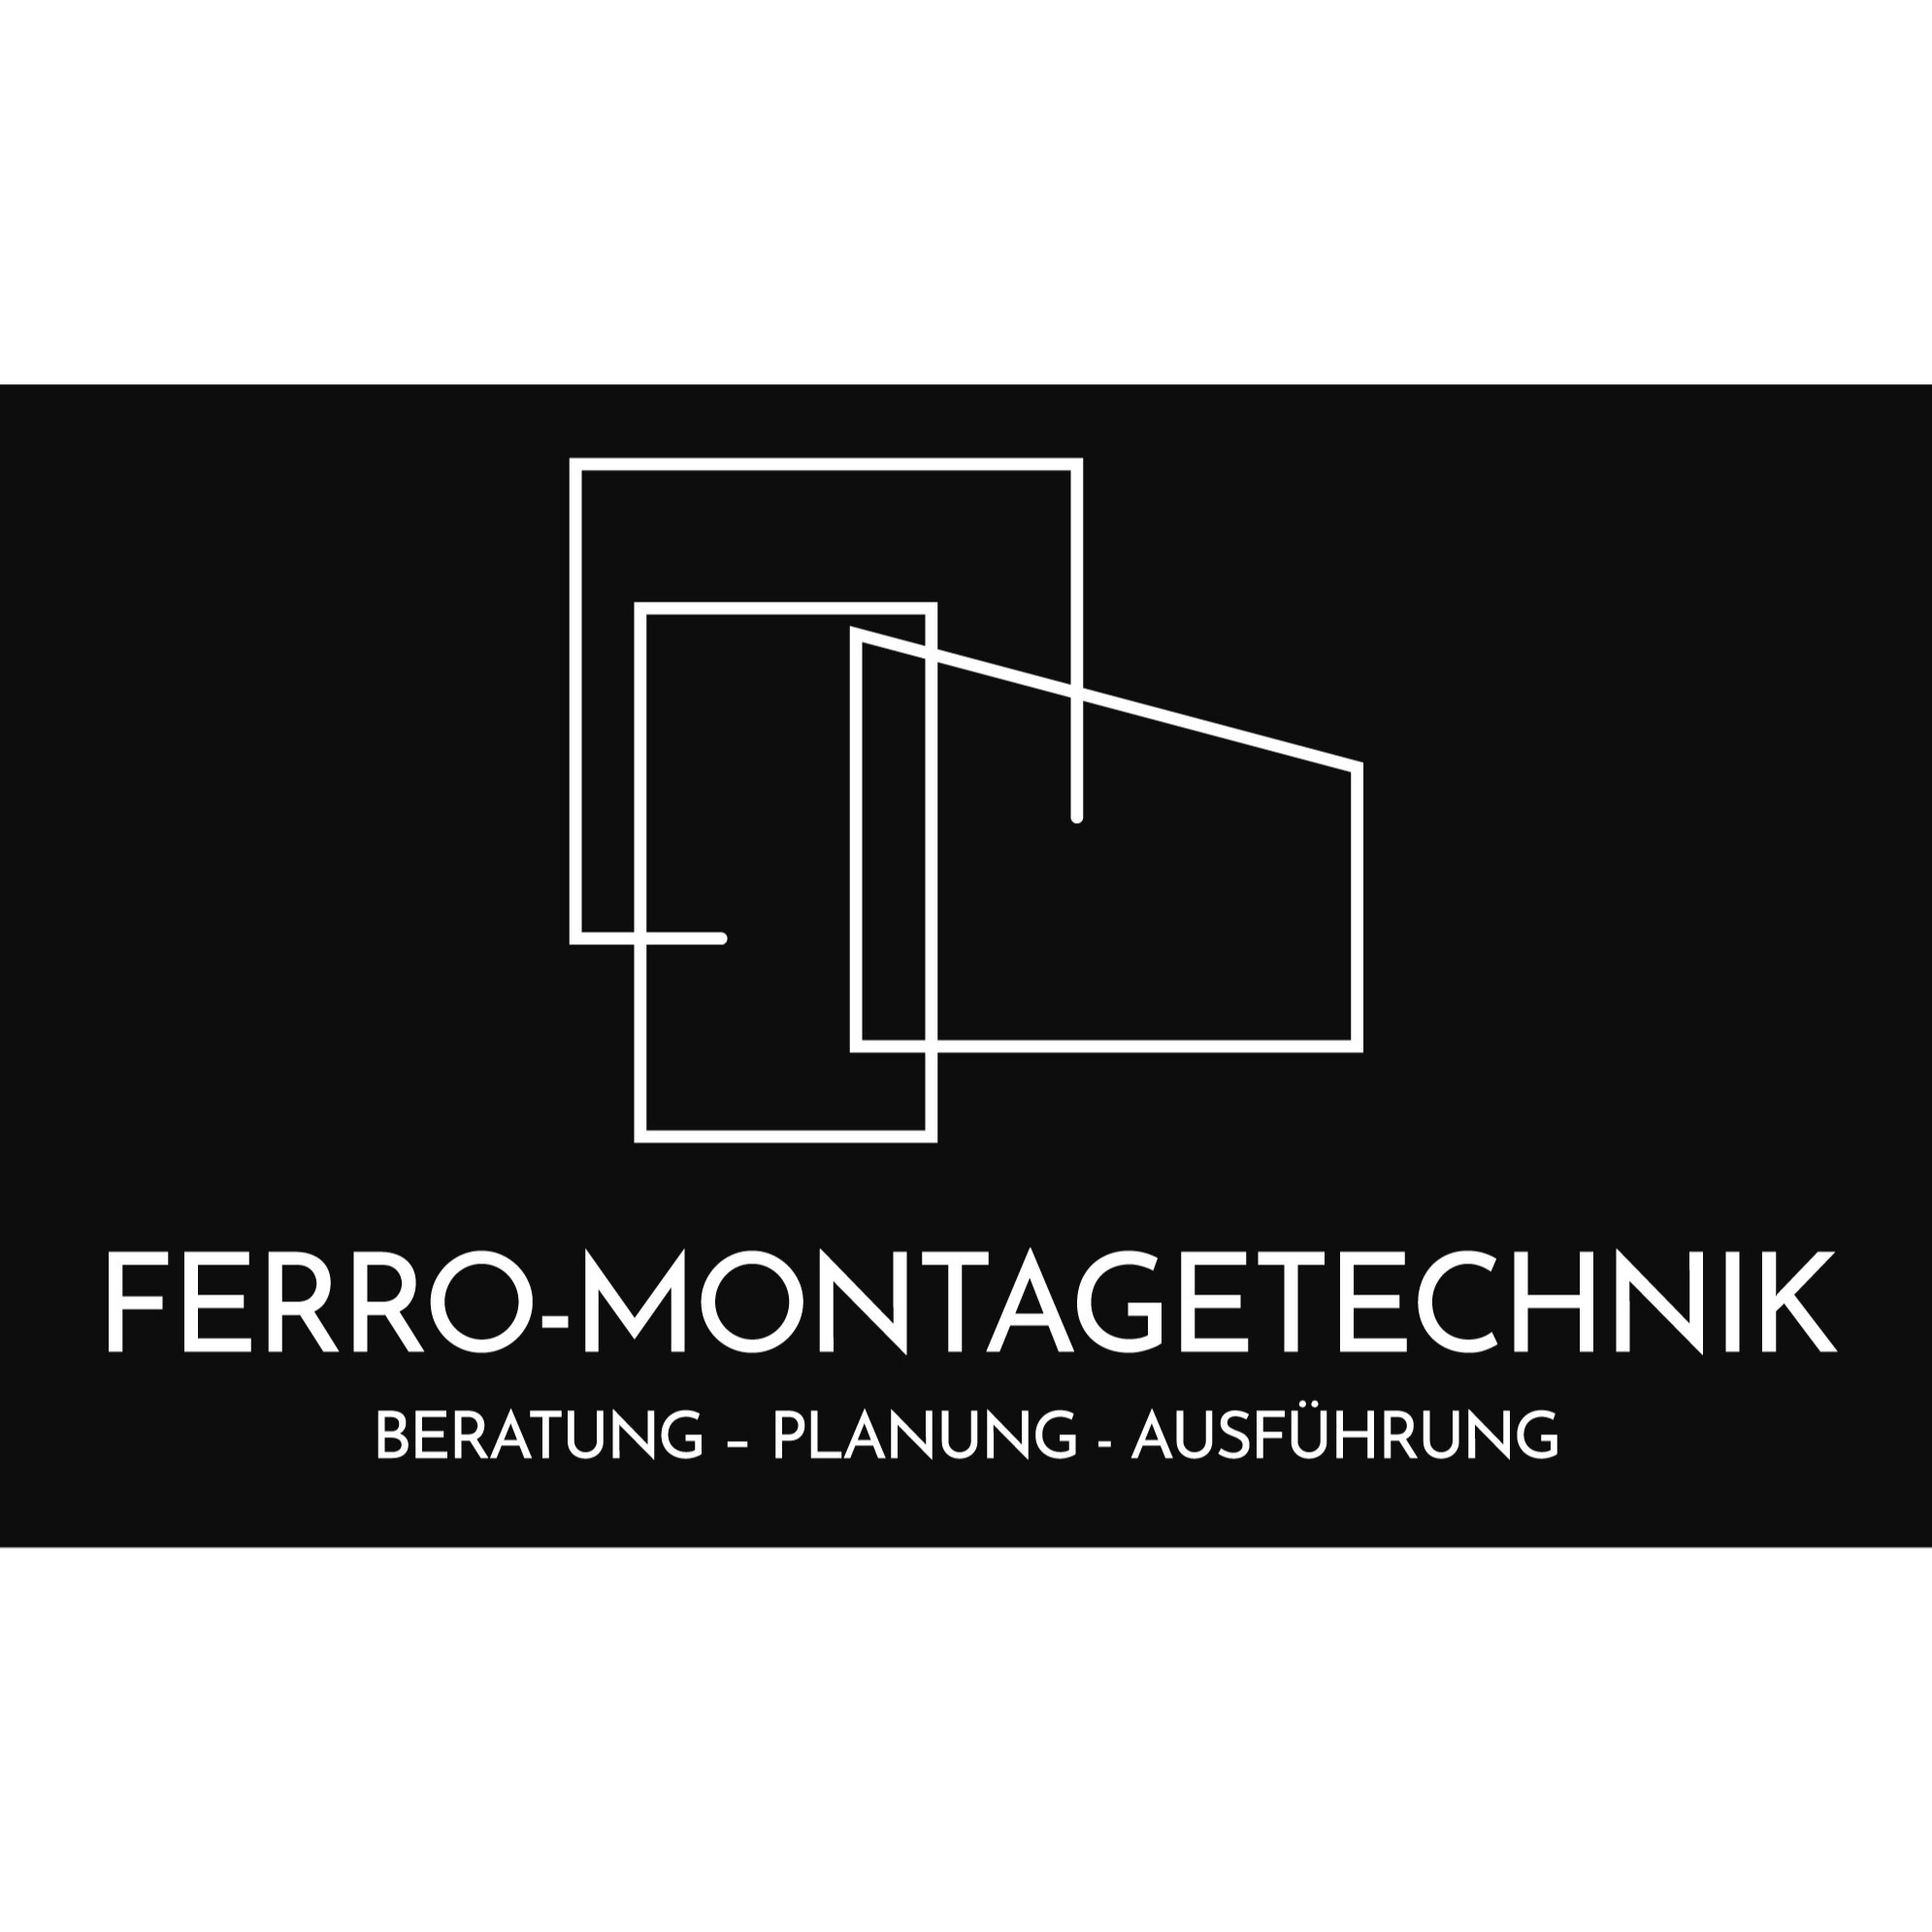 Ferro-Montagetechnik Beratung - Planung - Ausführung in Salzburg